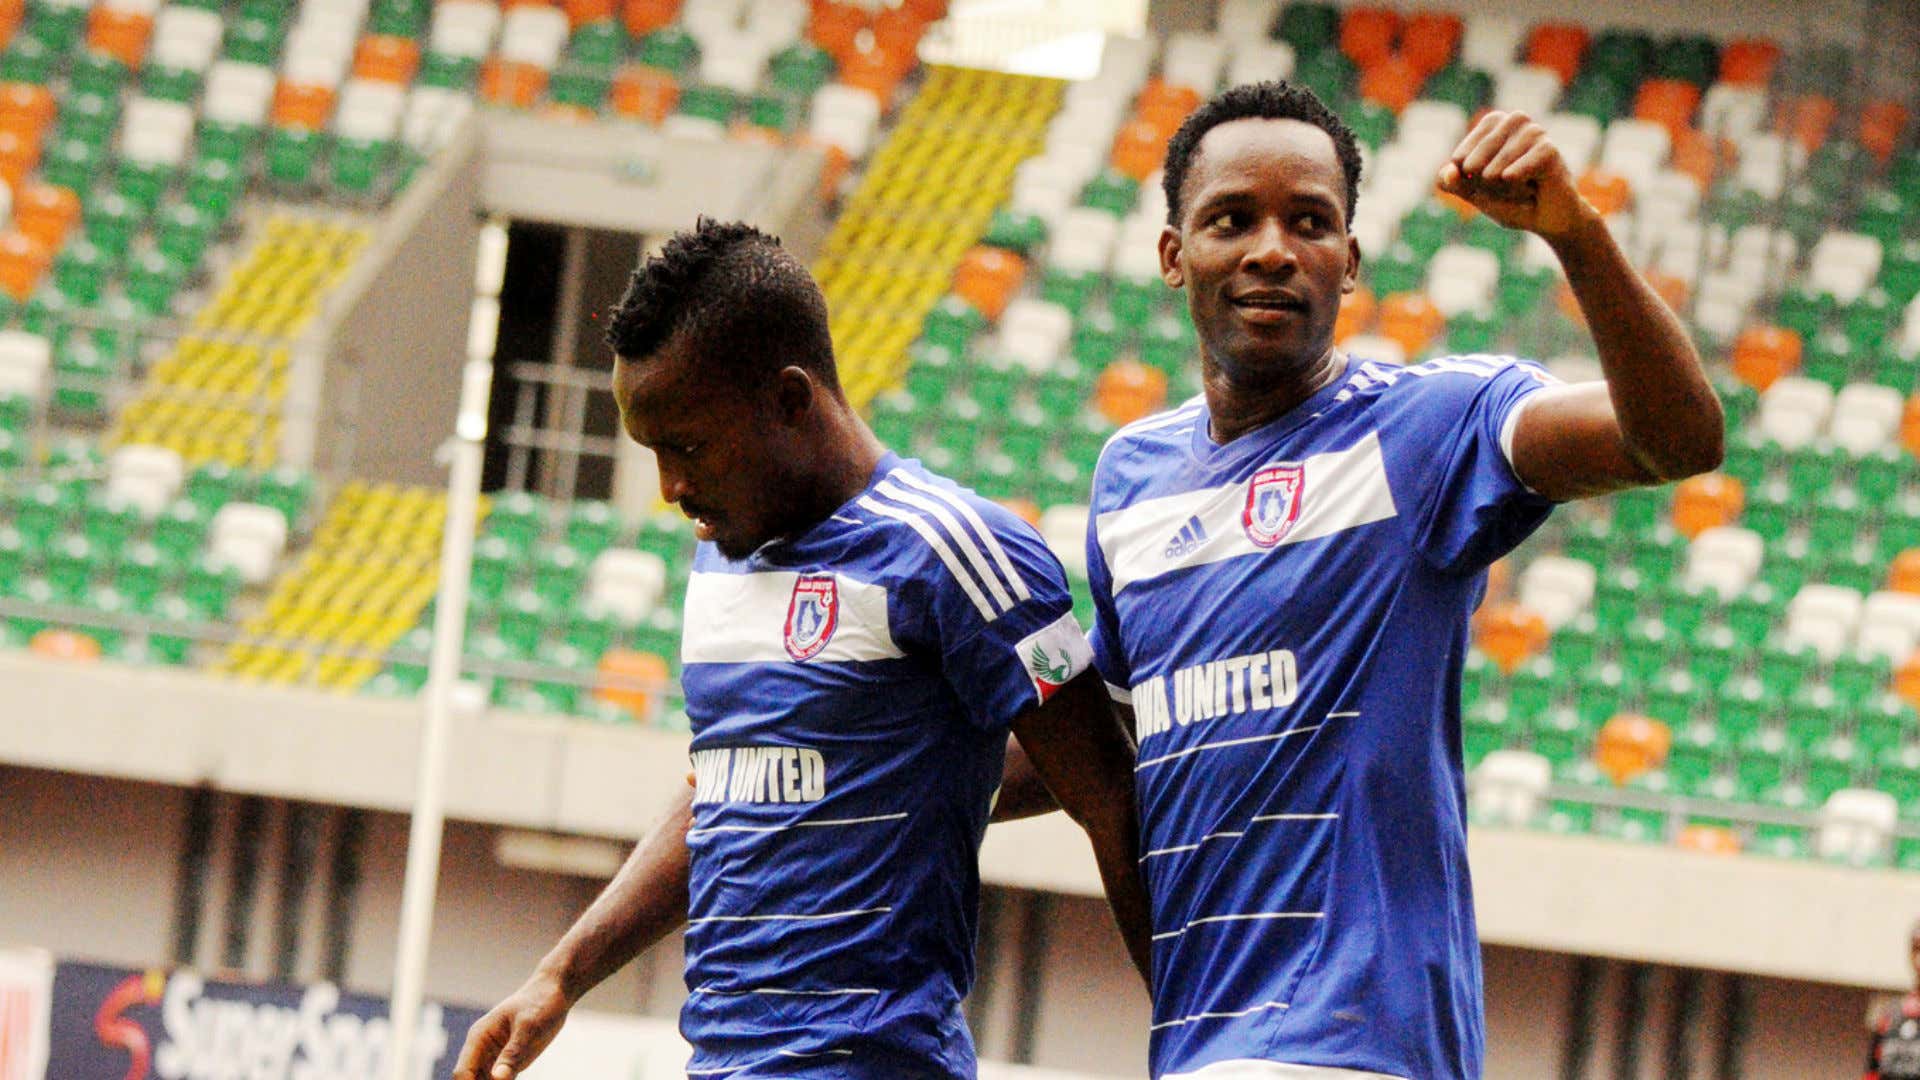 Hassan Babangida celebrate goal with team mate Olisema Cyril - Akwa United